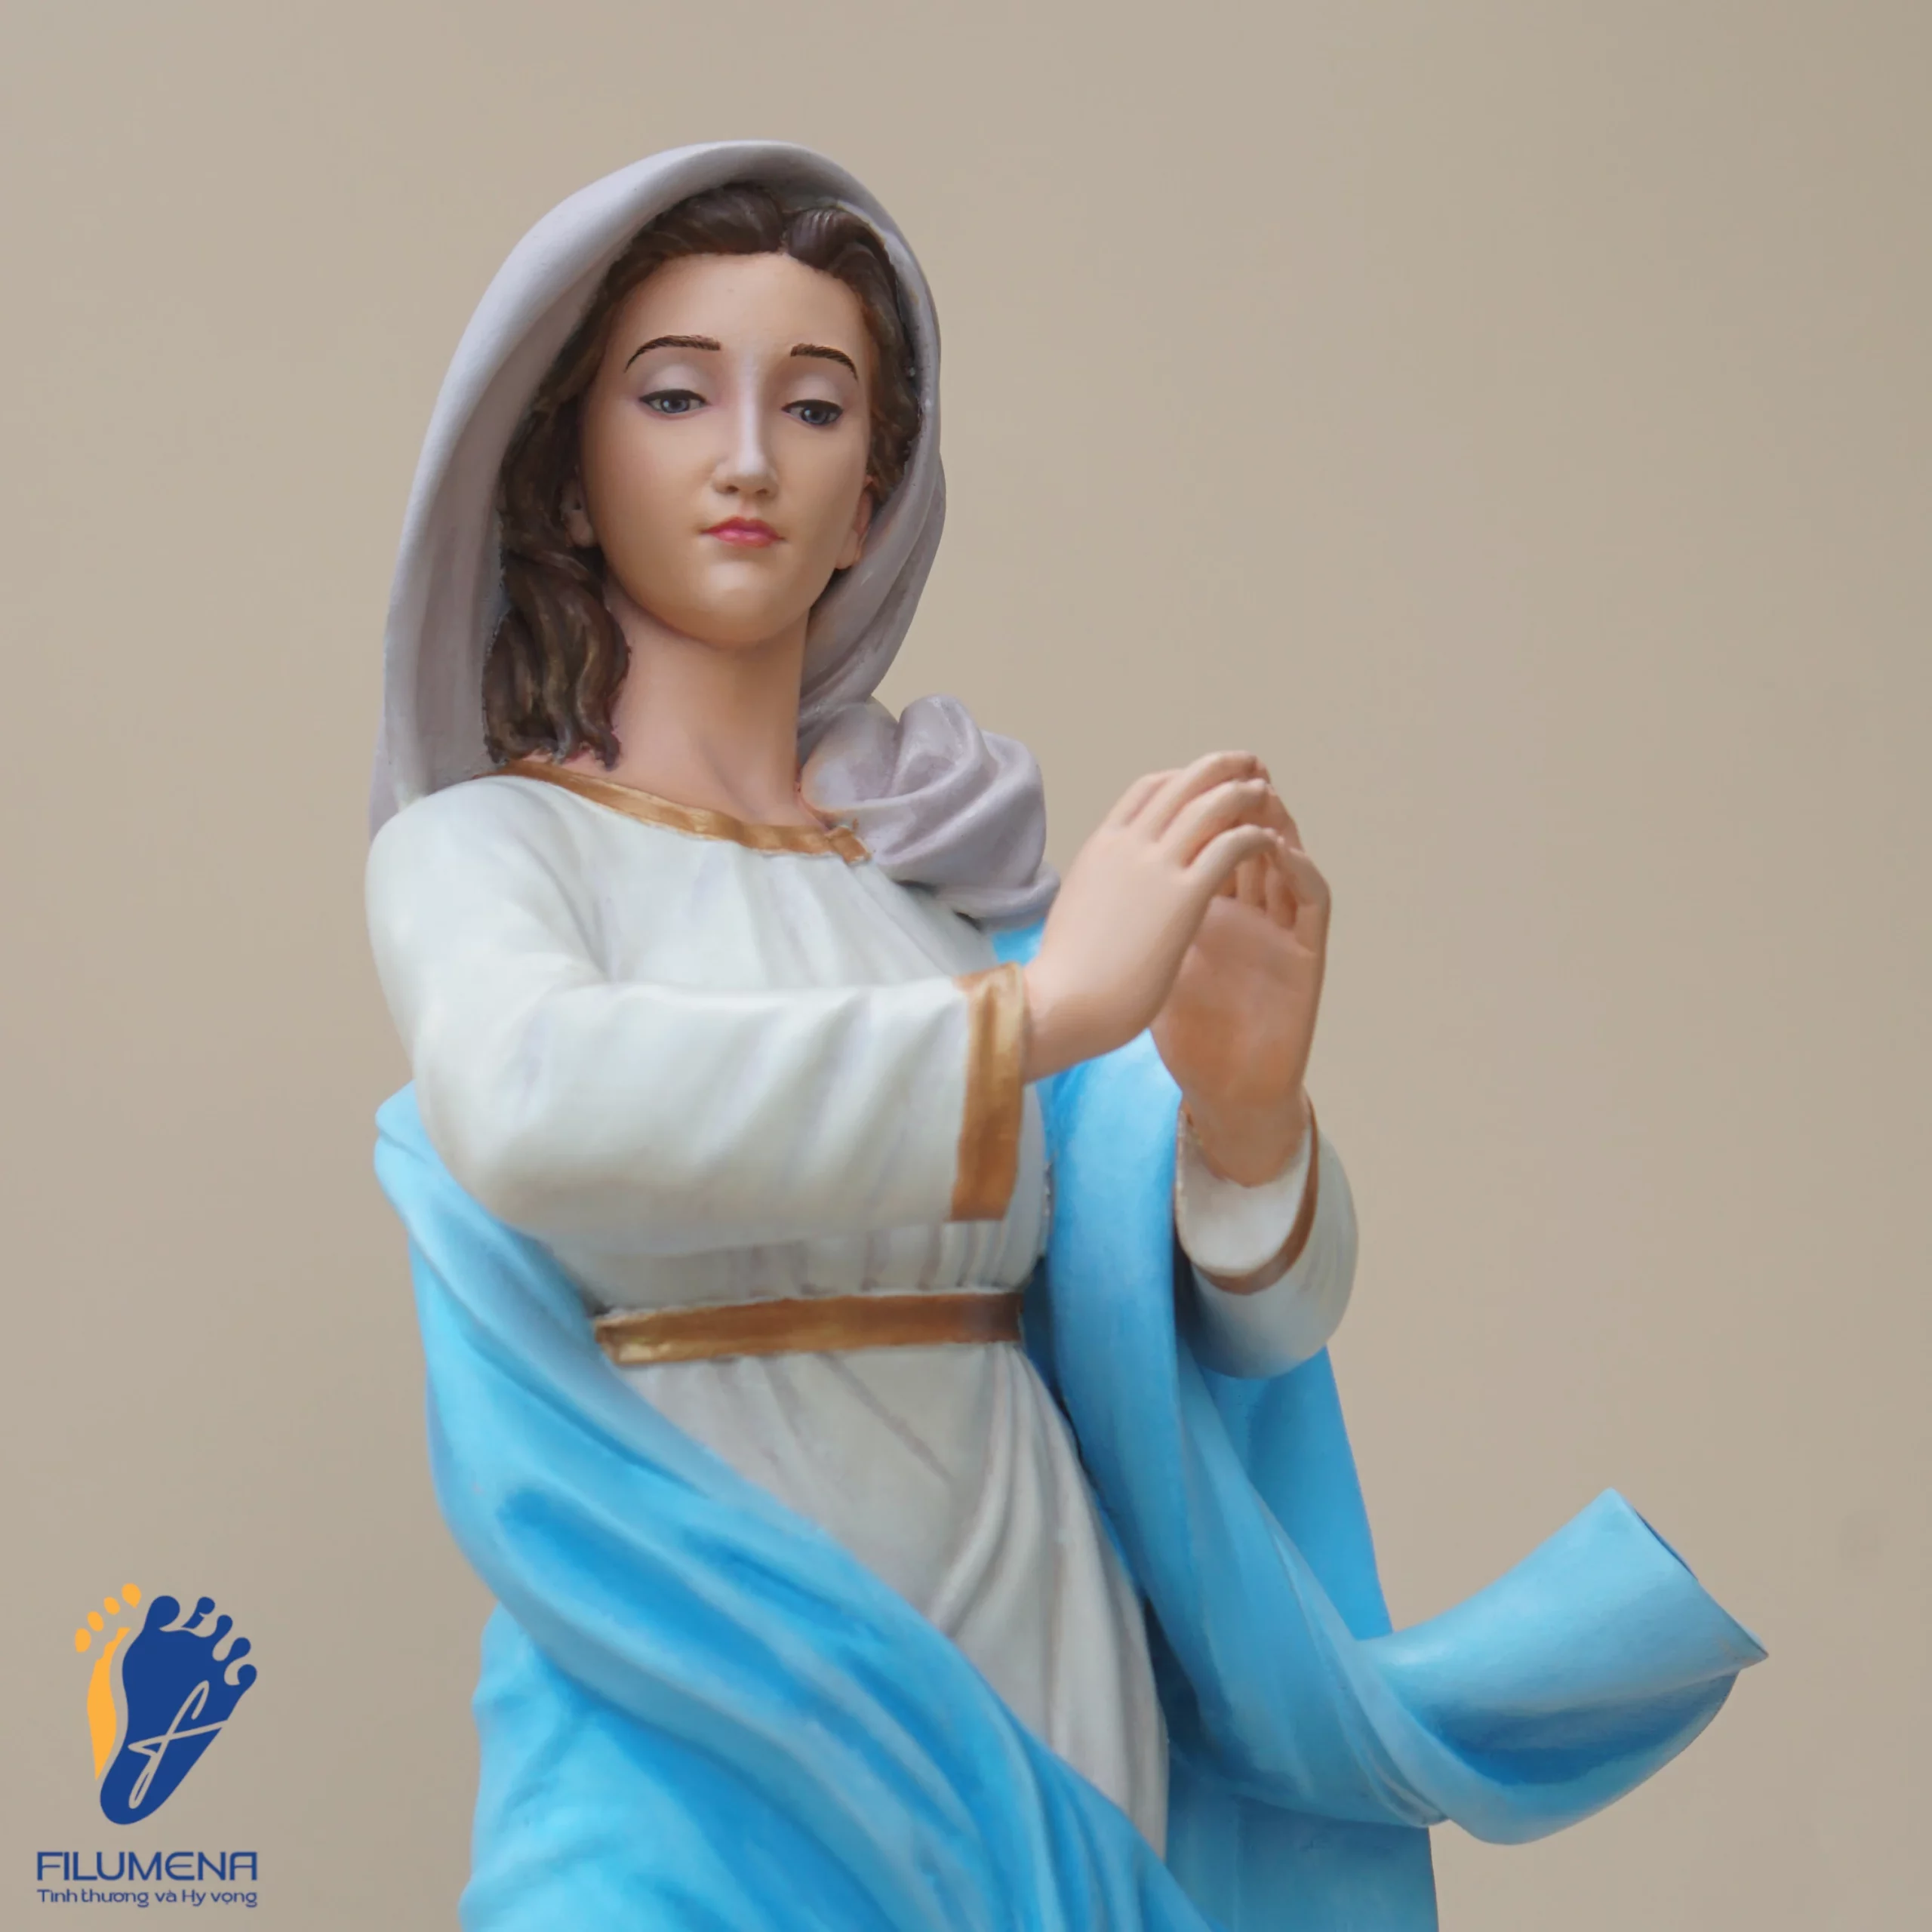 Tượng Đức Mẹ Vô Nhiễm Nguyên Tội, áo Mẹ màu xanh da trời, chụp từ góc trái, cận cảnh (sáng tác bởi Filumena)